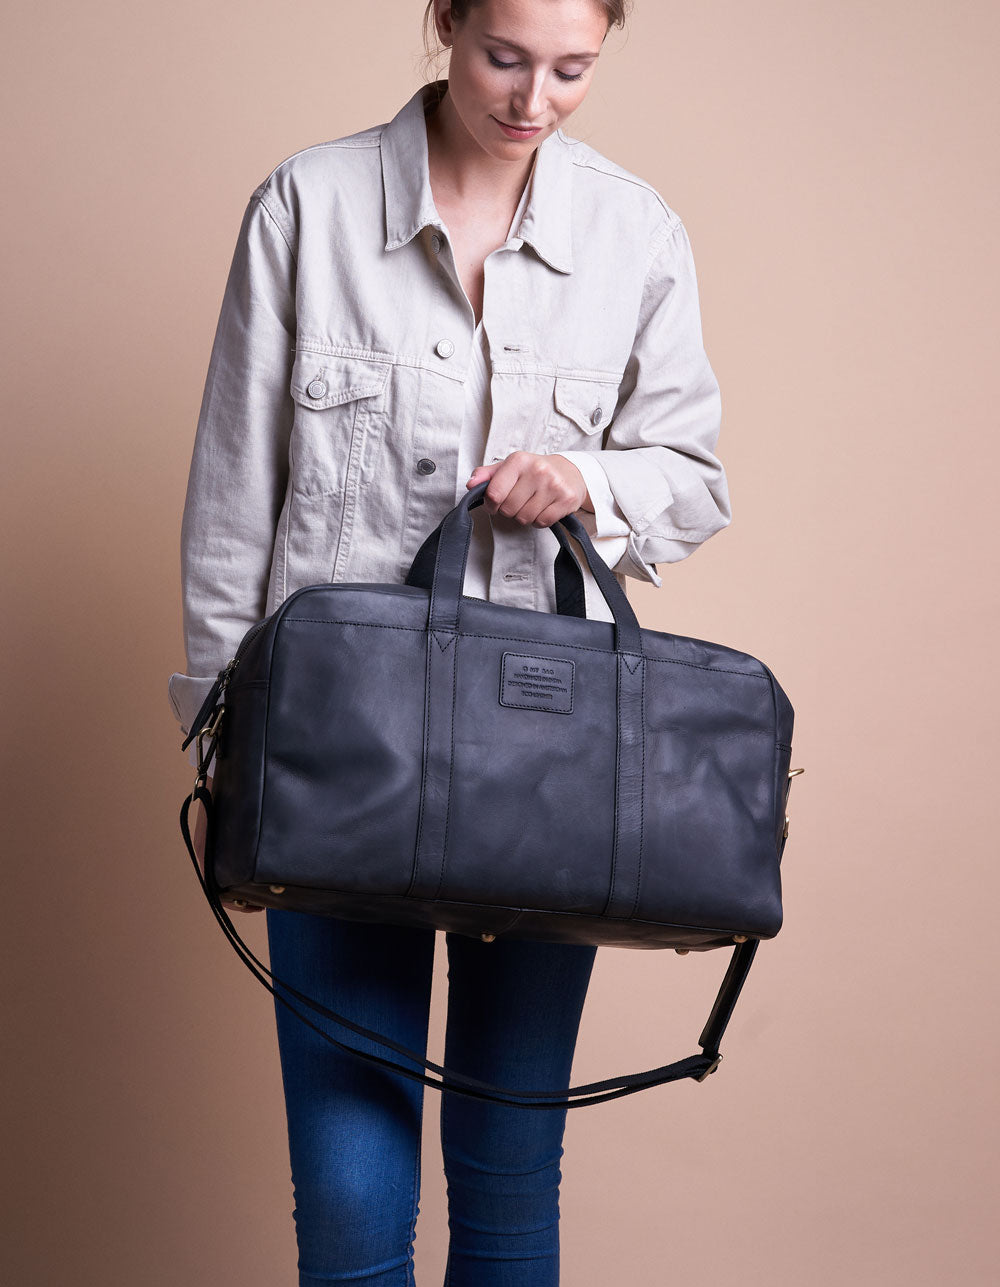 Otis Weekender Black Hunter Leather. Large travel bag for men. Model image.